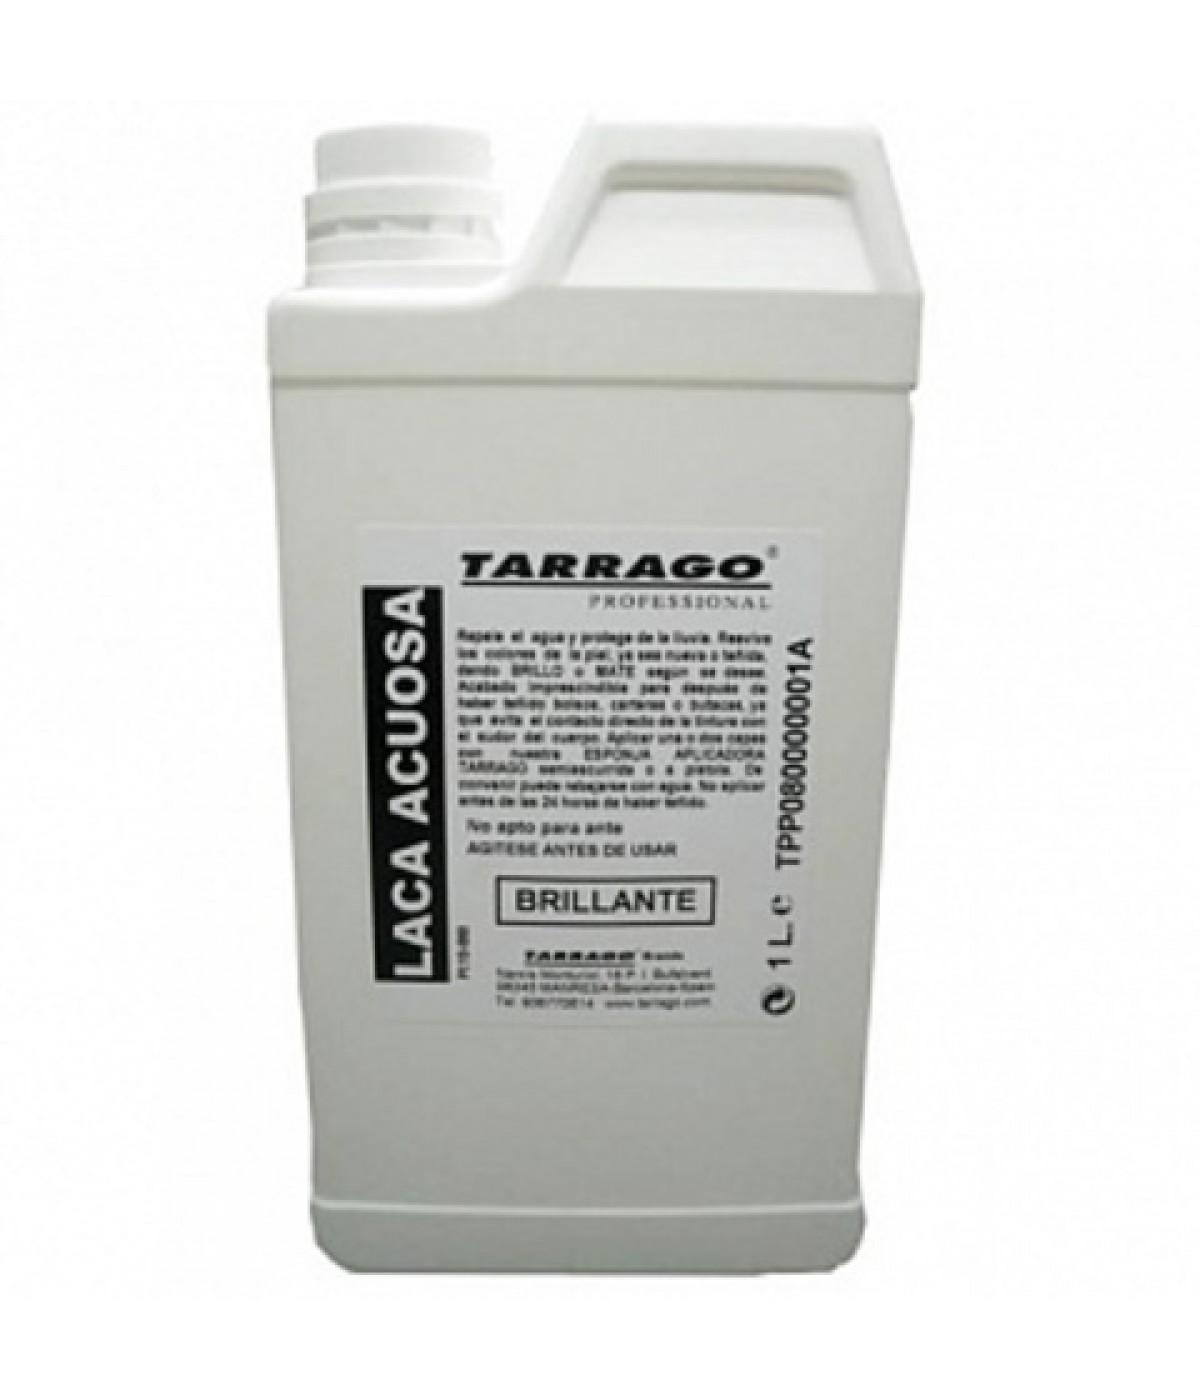 Защитное покрытие для окрашенных изделий Tarrago FINISHING (WATER BASIS LACQUER) Briliant 1 L